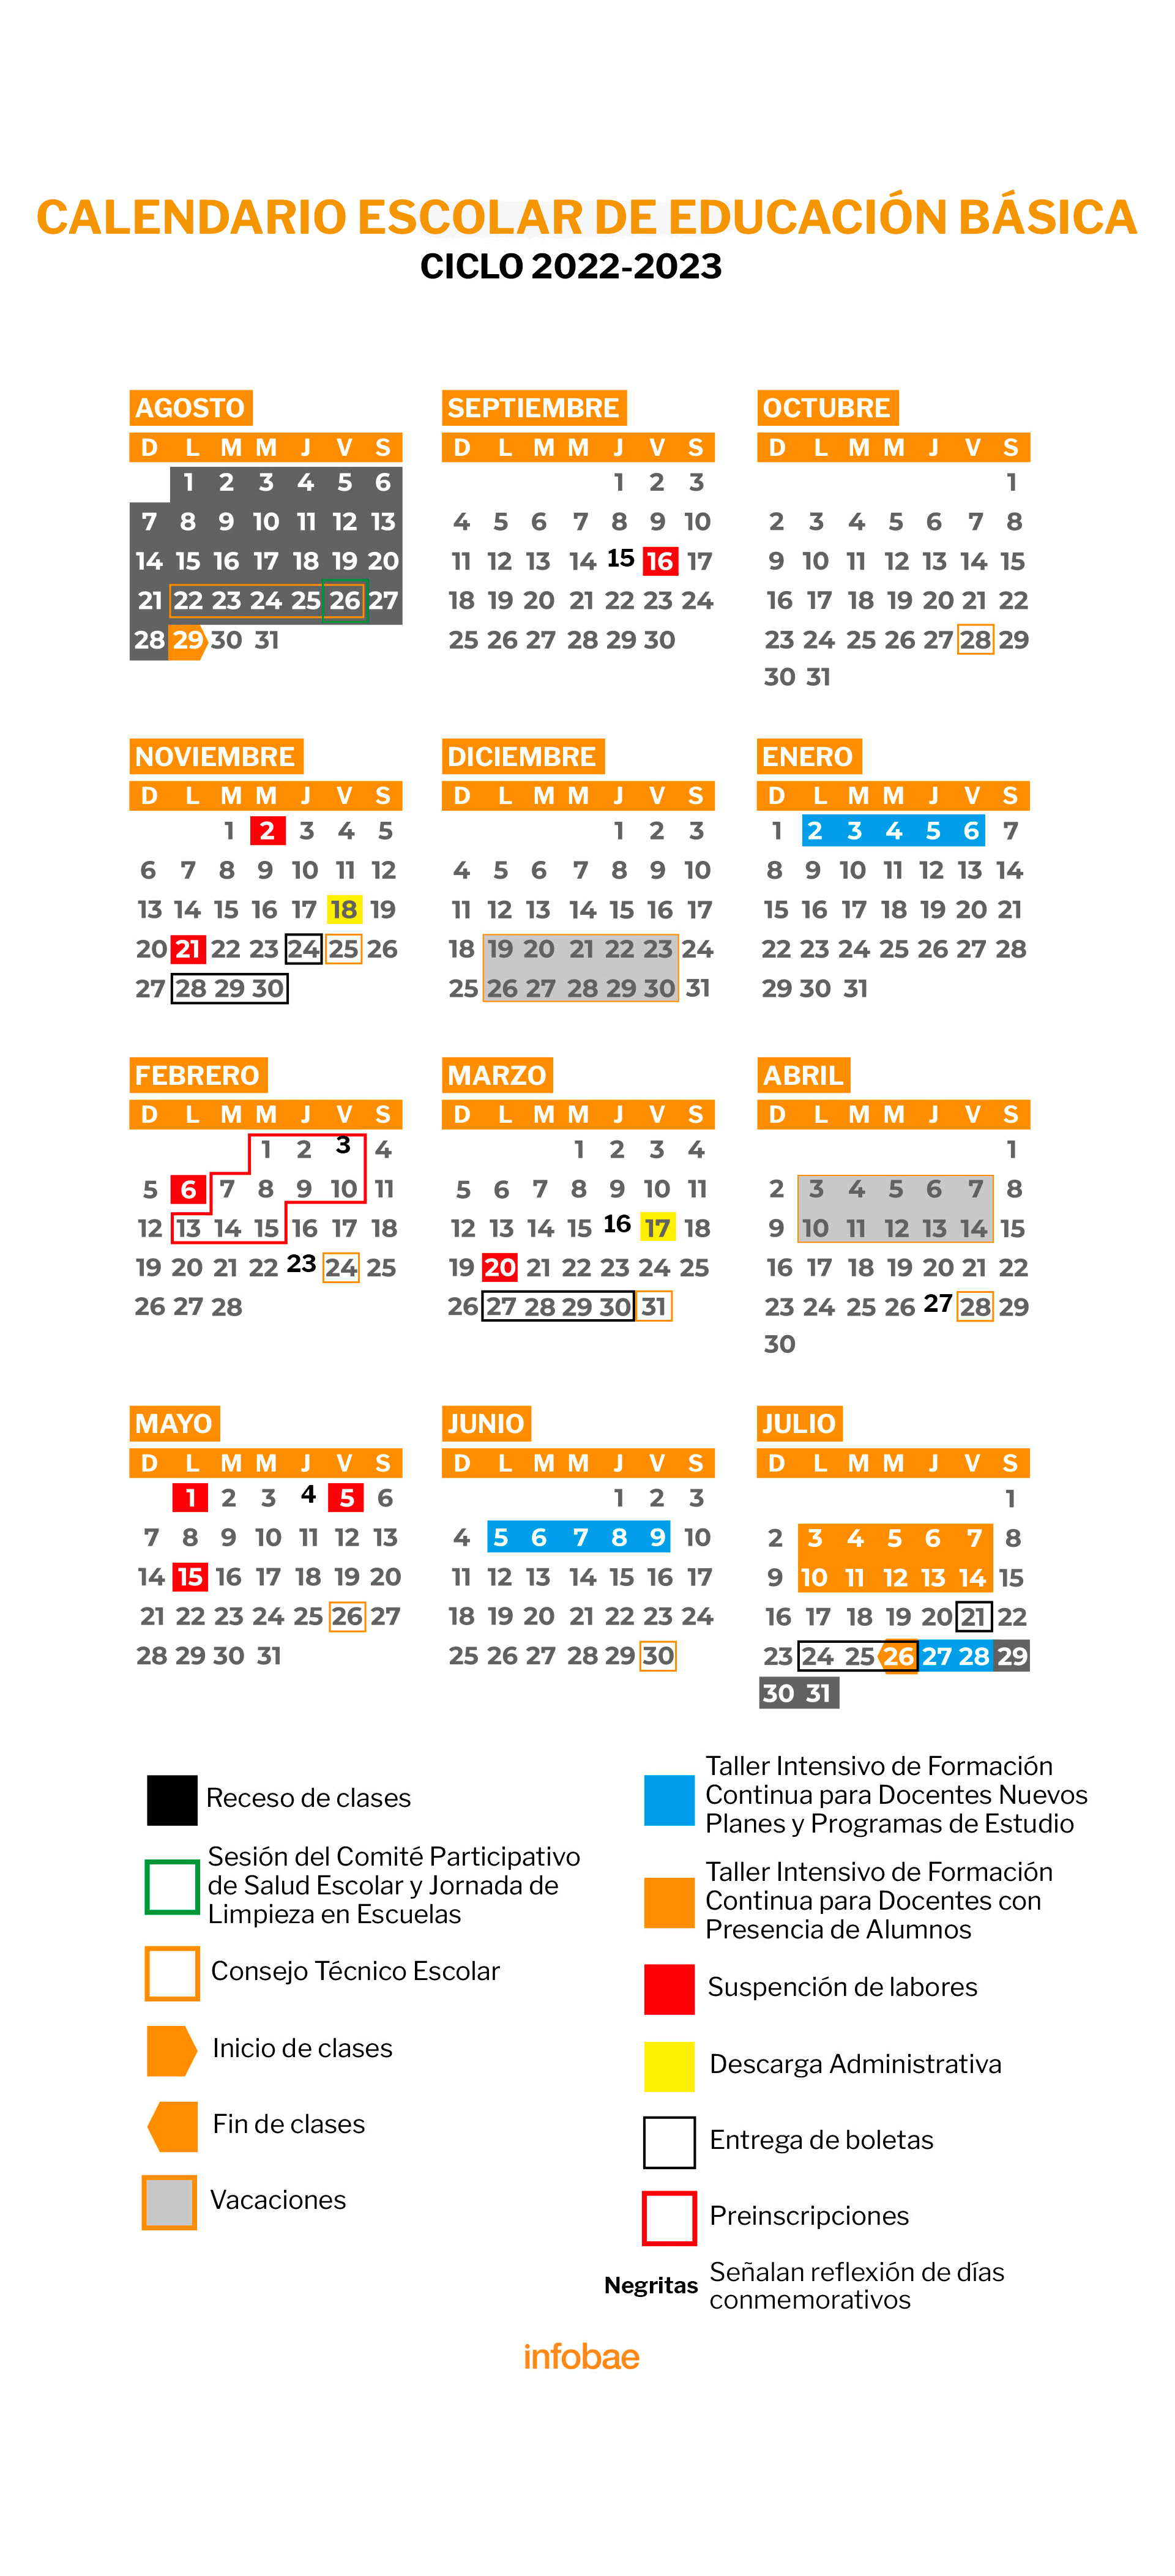 Calendario oficial de la SEP del ciclo escolar 2022-2023. (Infobae)